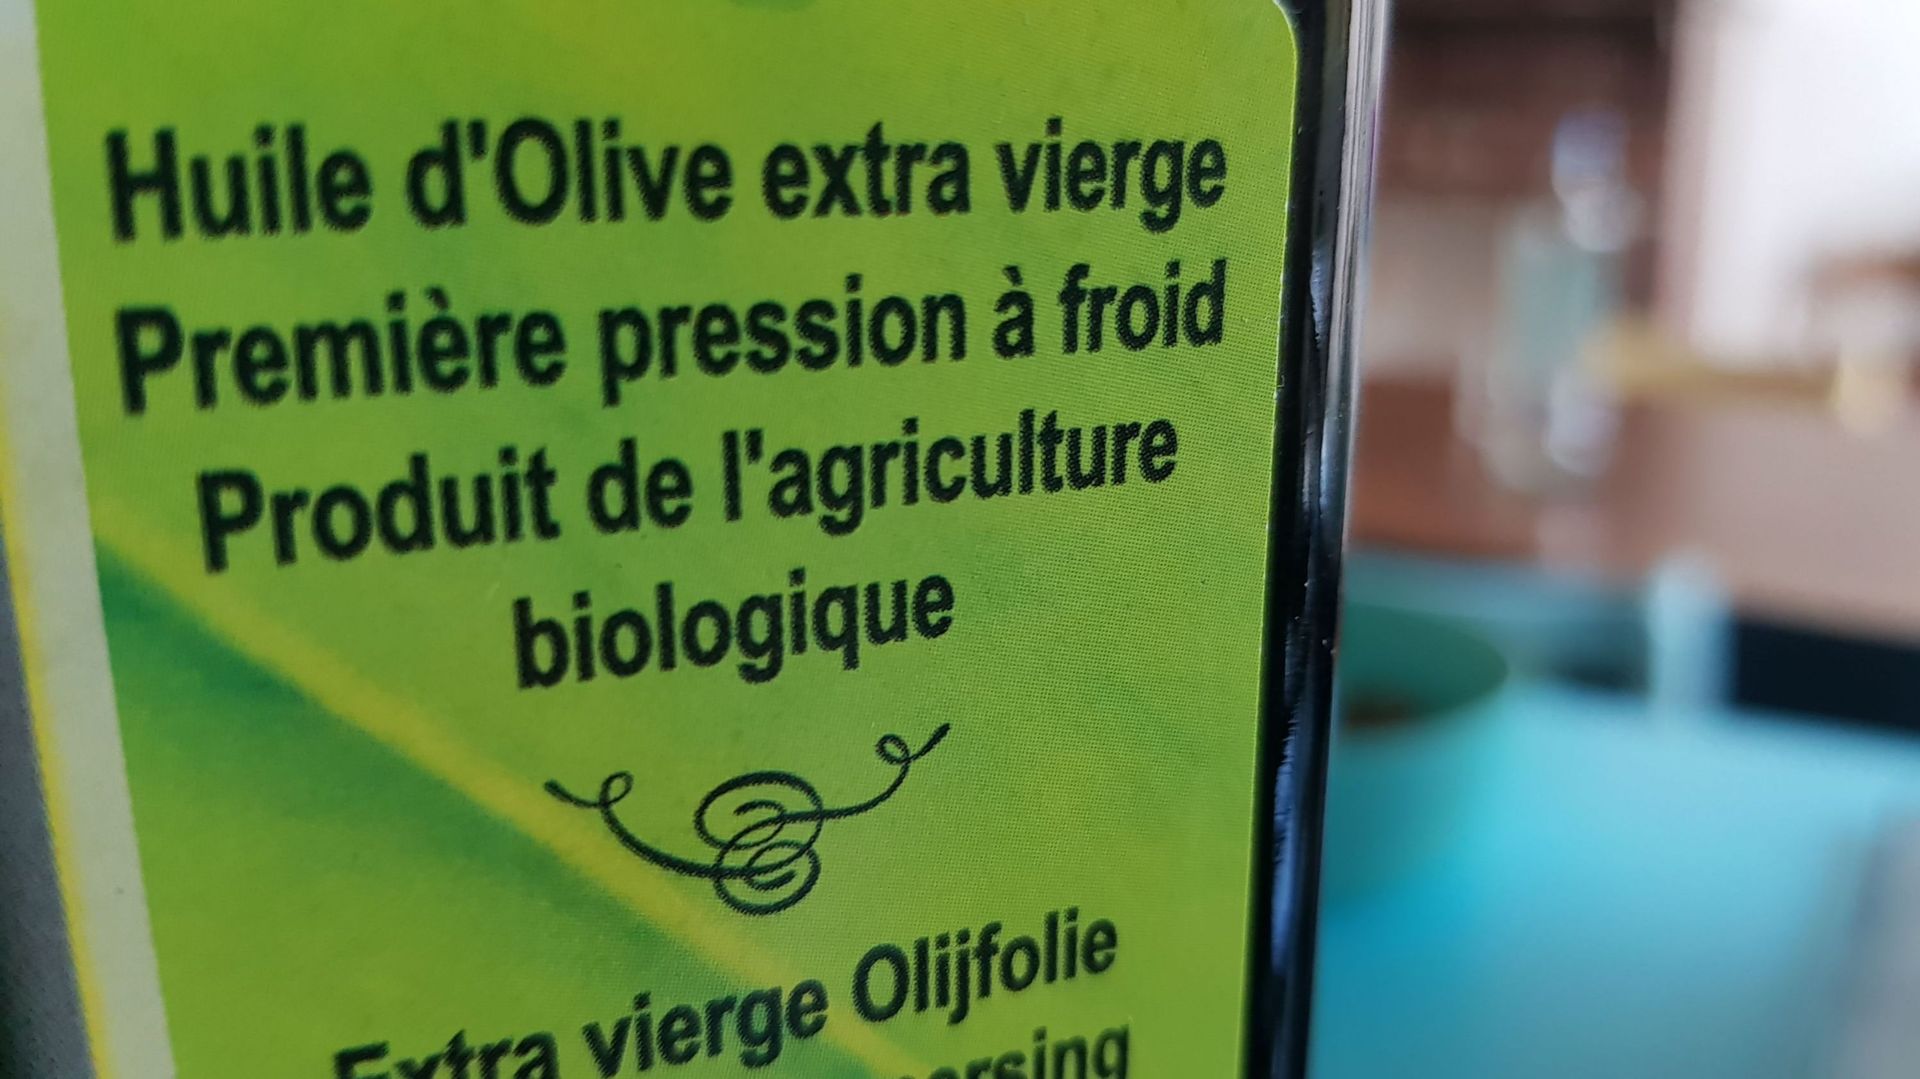 L'huile d'olives ne peut se vendre qu'en contenants fermés depuis 2012 